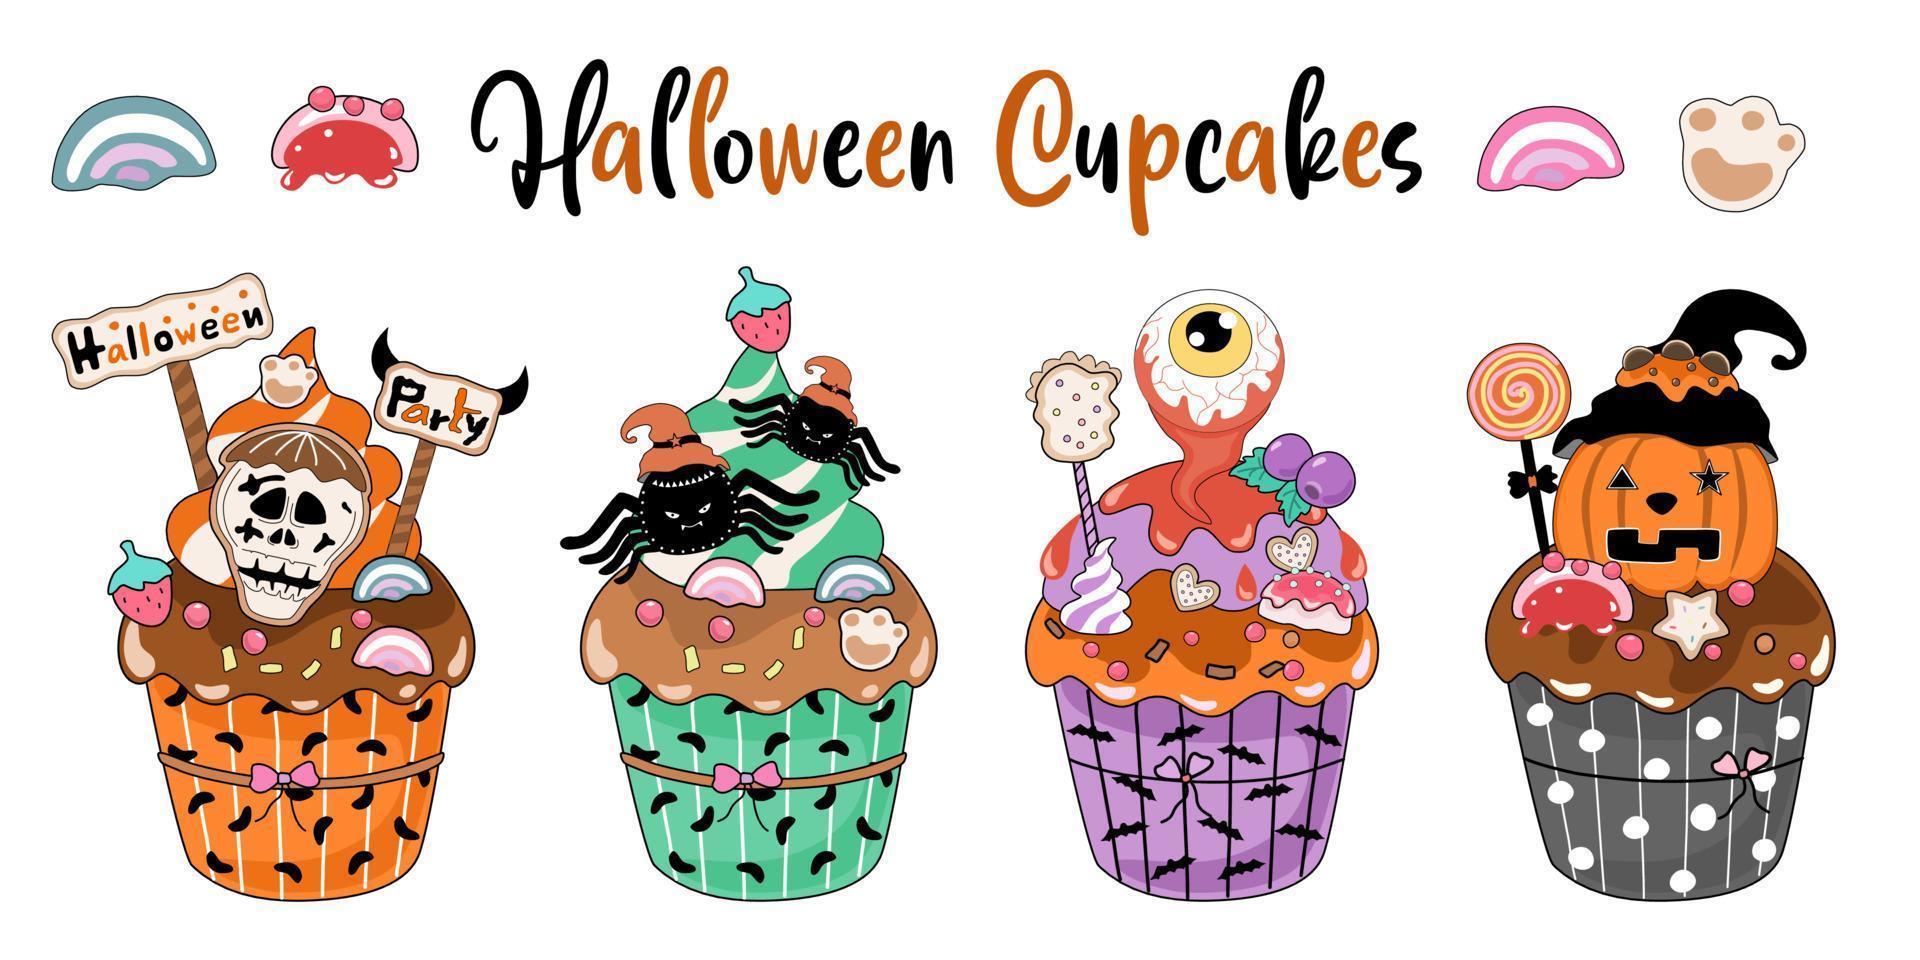 cupcakes de halloween projetados em estilo doodle em fundo branco. ótimo para decorar temas de halloween, cartões, designs de camisetas, almofadas, adesivos, impressões digitais e muito mais. vetor